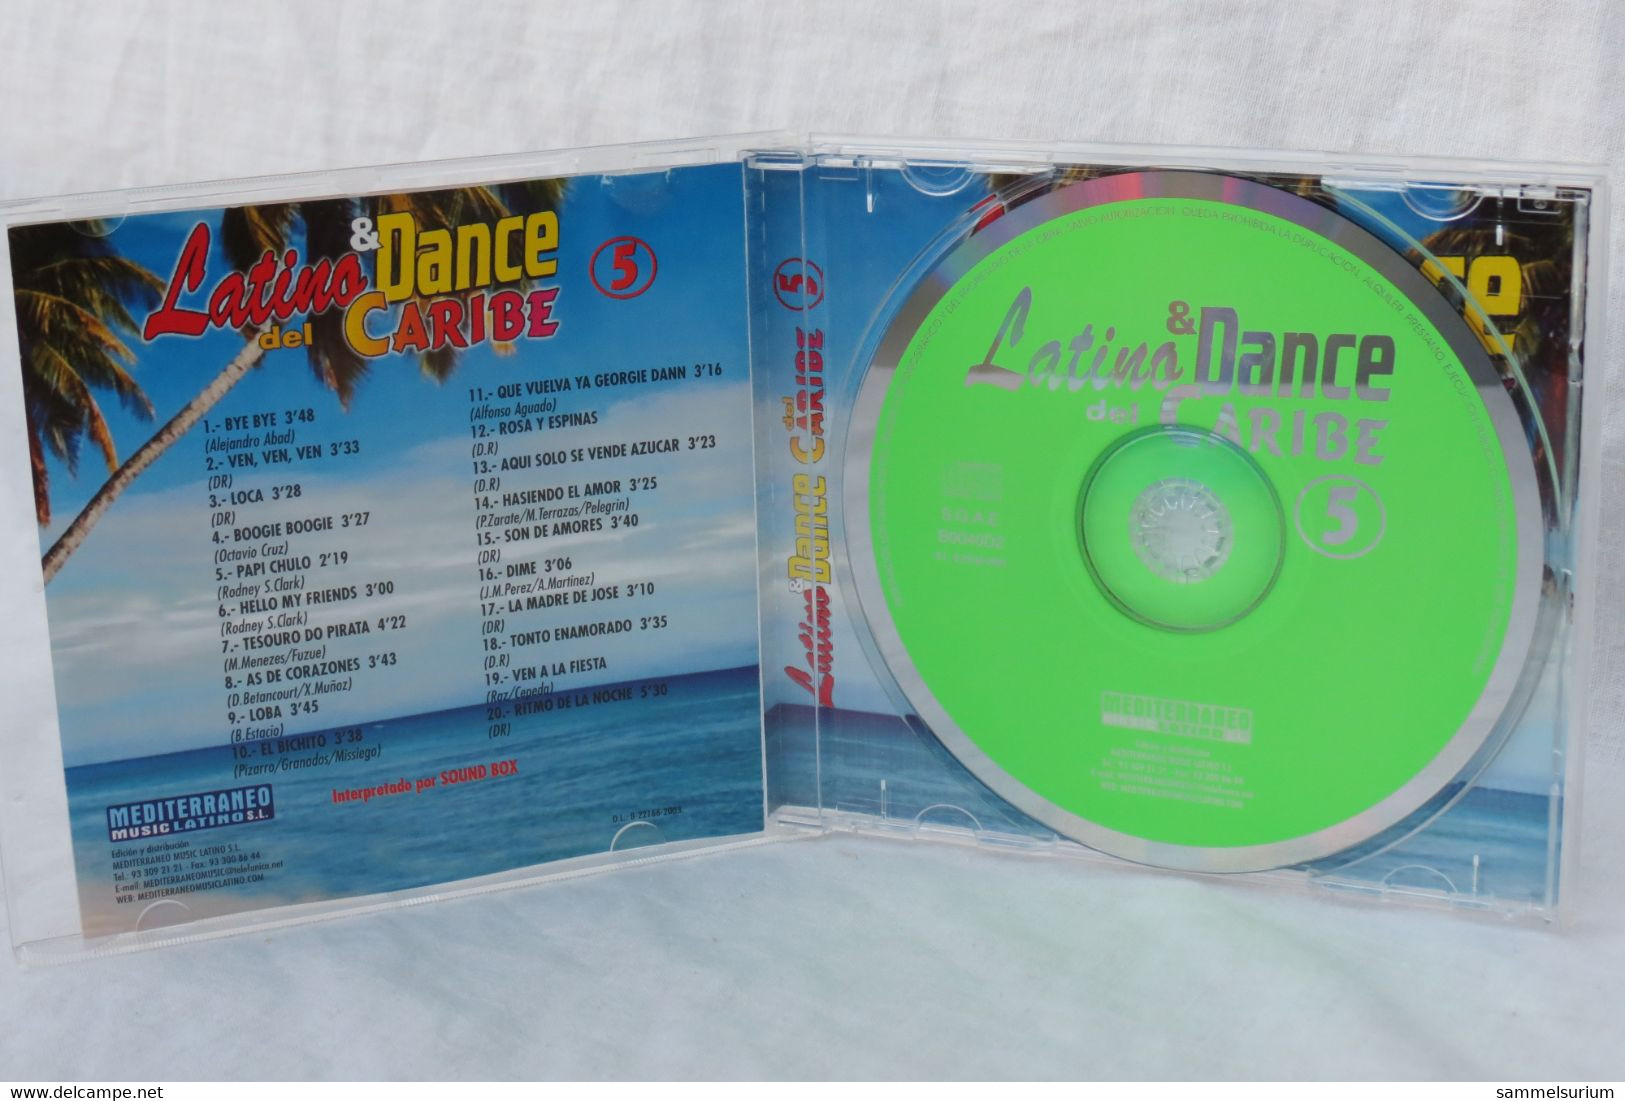 CD "Latina & Dance Del Caribe" Vol.5 - Compilations